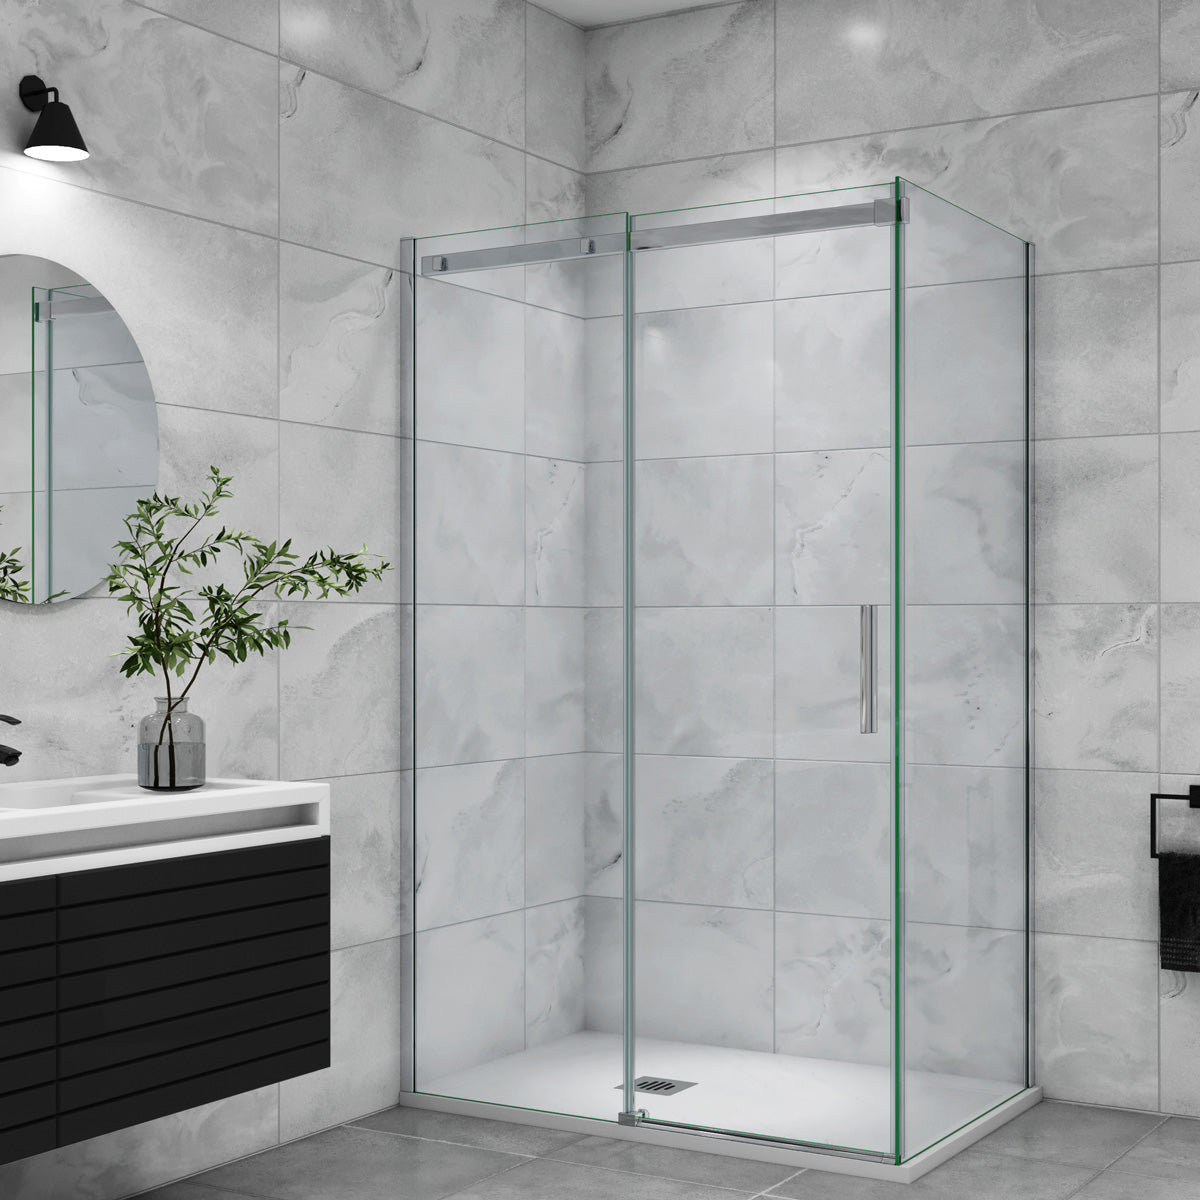 Duschtür+Seitenwand Duschkabine 150x80 cm Glasstärke 6mm Schiebetür Dusche Duschabtrennung